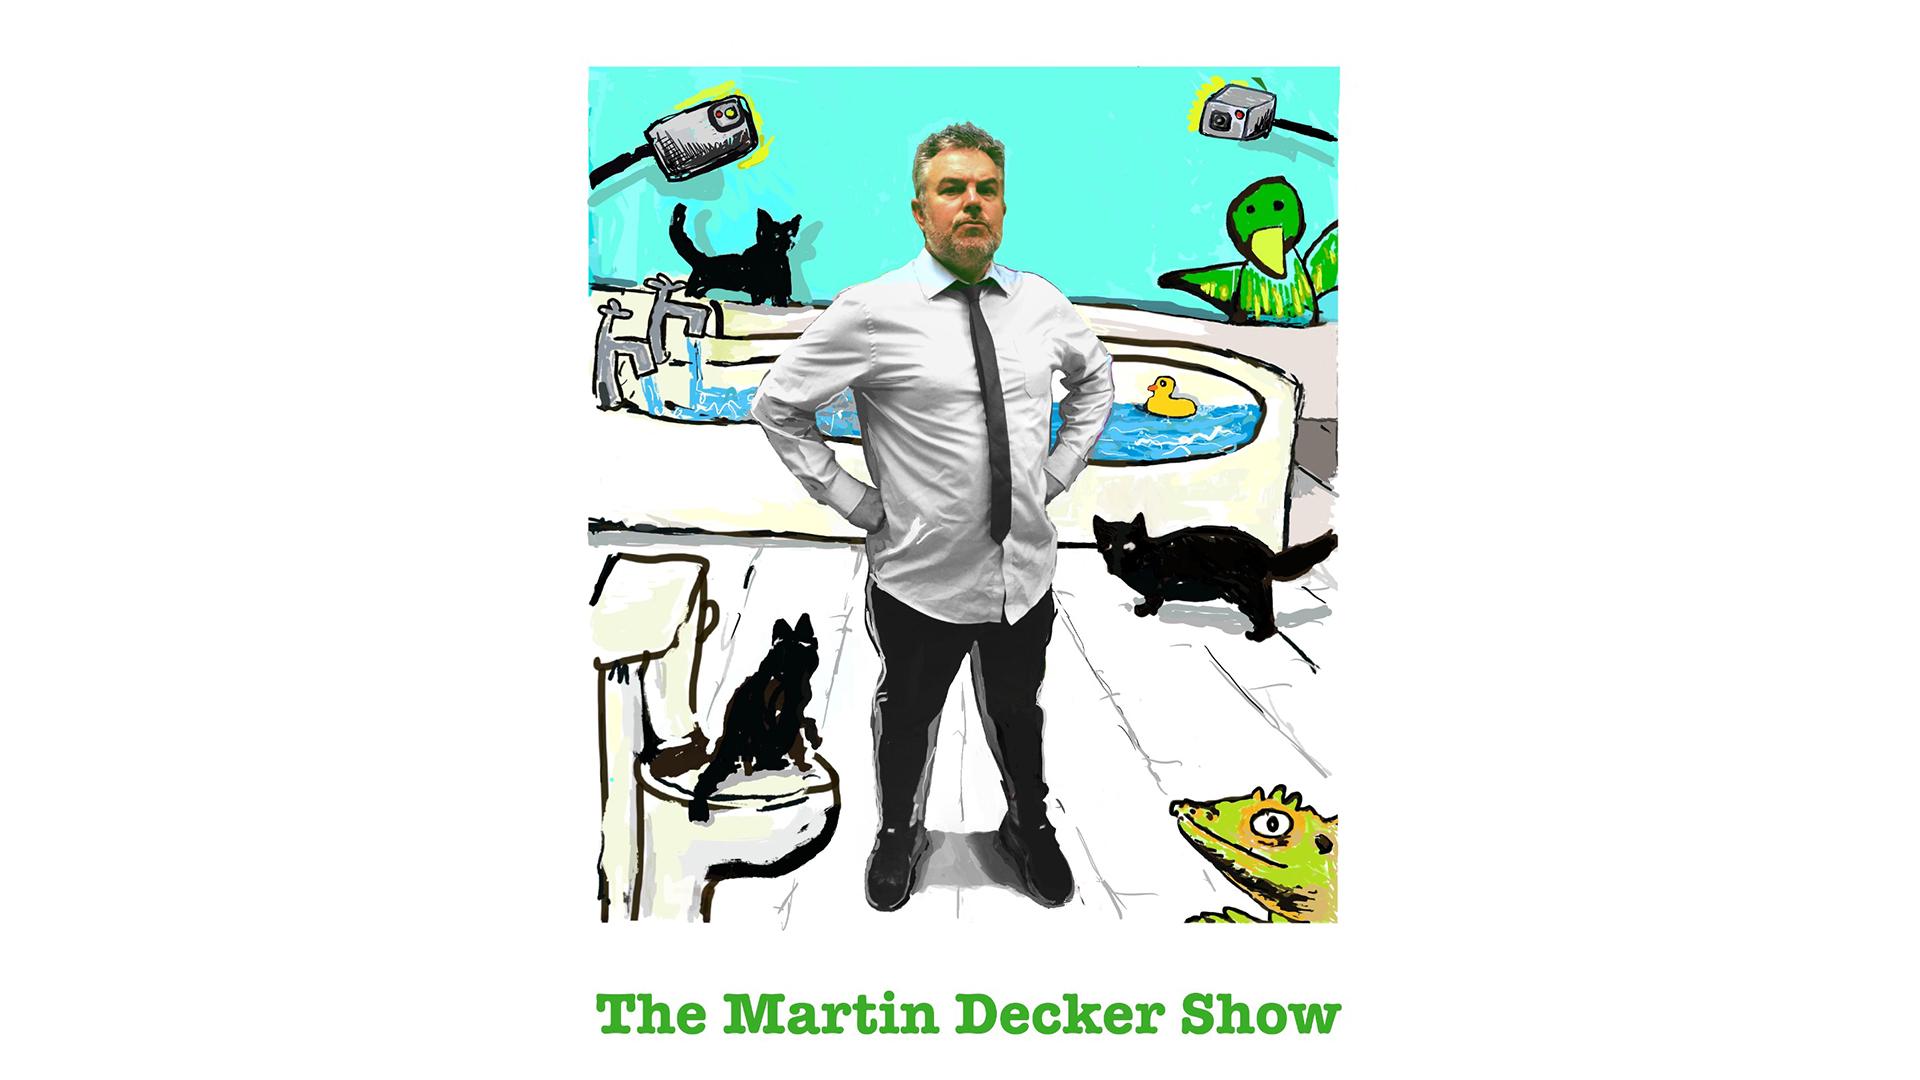 The Martin Decker Show